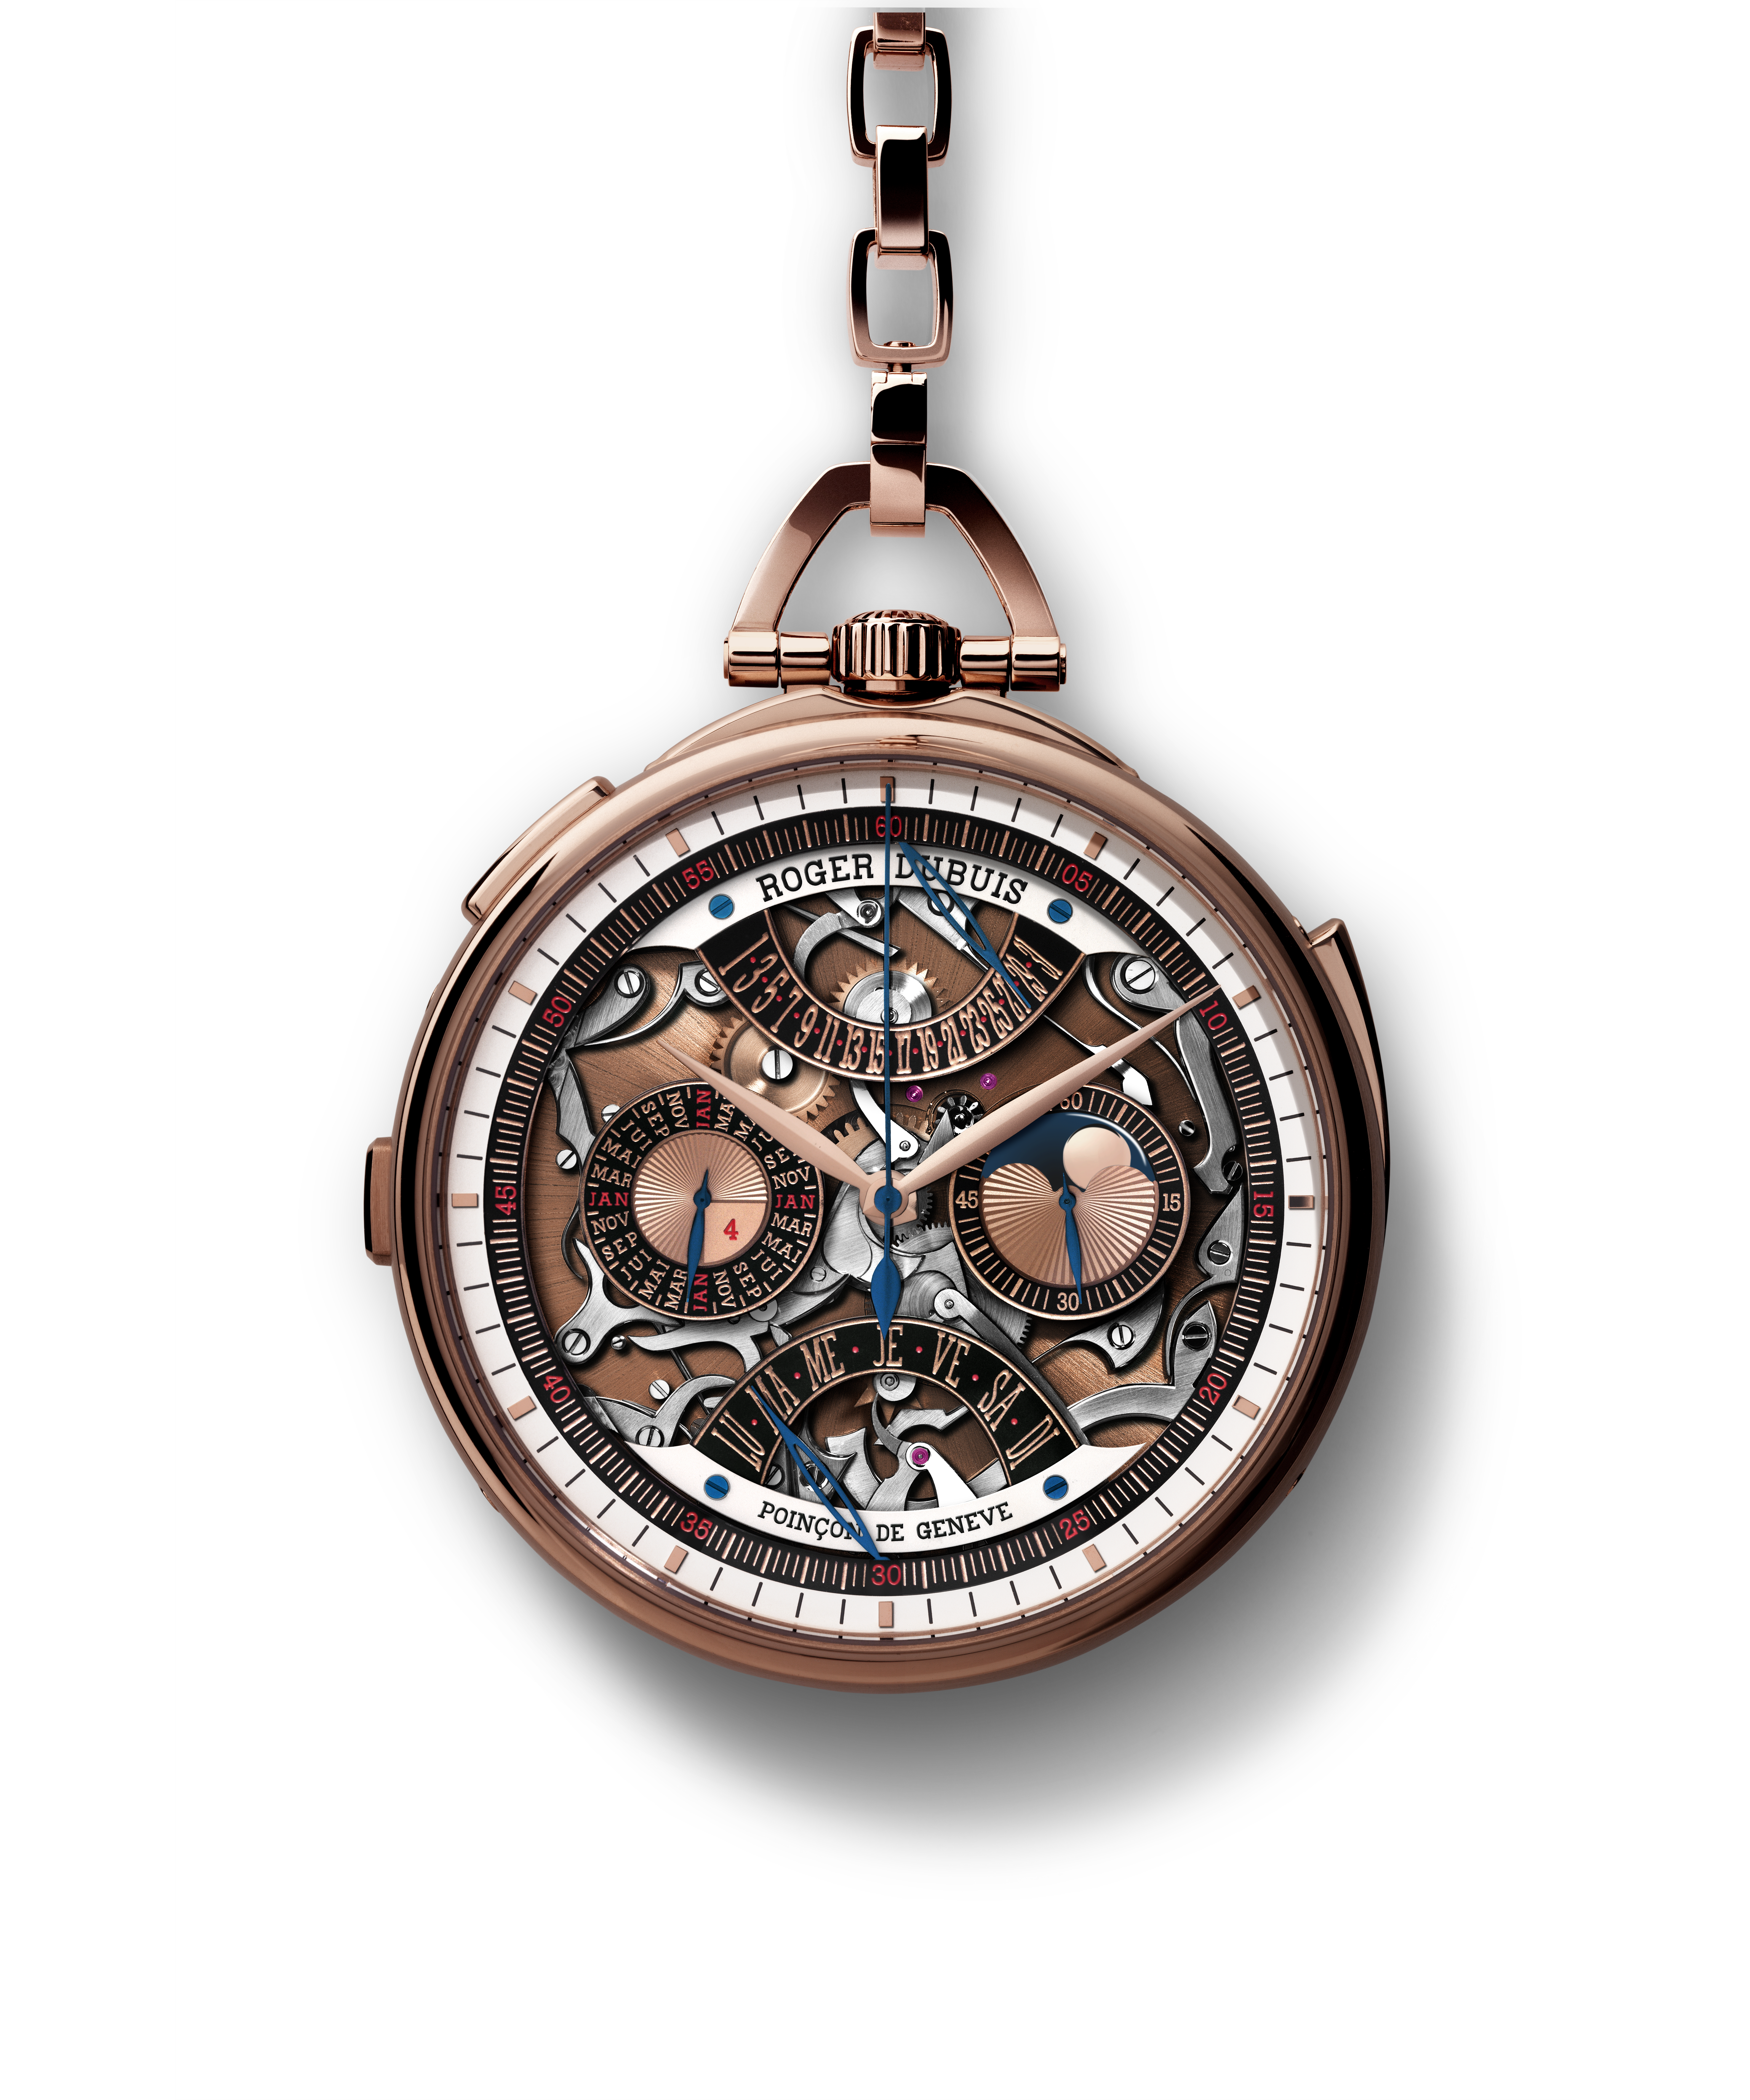 Nouveau Millésime de Roger Dubuis à l'occasion de l'ouverture de sa boutique à Genève qui restaure une merveille horlogère